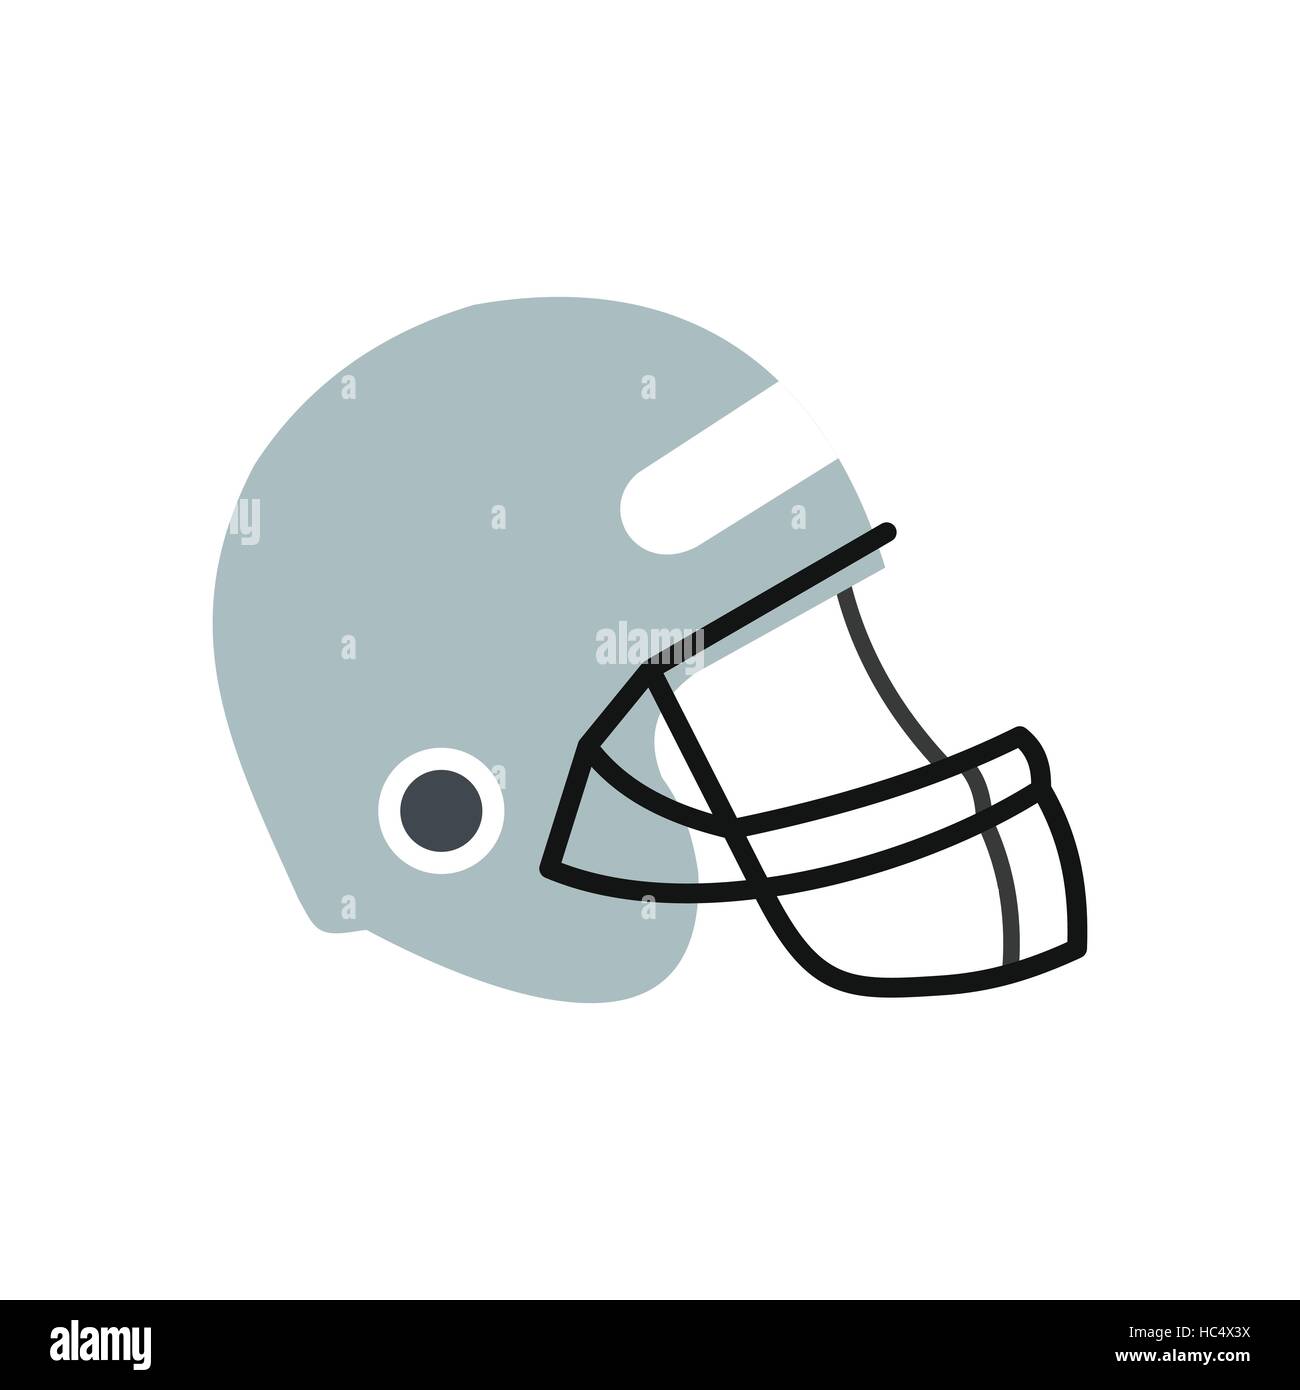 Baseball Catcher Mask Helmet Stock Vector Image & Art - Alamy